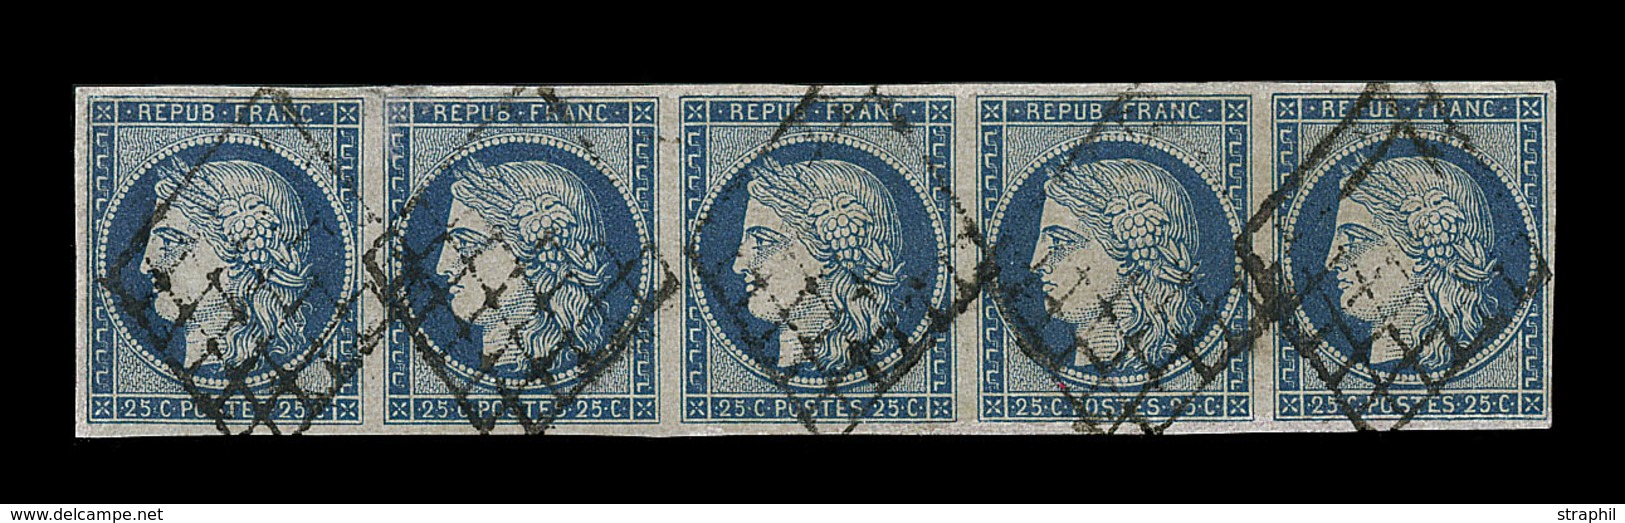 O EMISSION CERES 1849 - O - N°4 - 25c Bleu - Bde De 5 - Qualité Exceptionnelle - Pièce De Luxe - TB - 1849-1850 Cérès